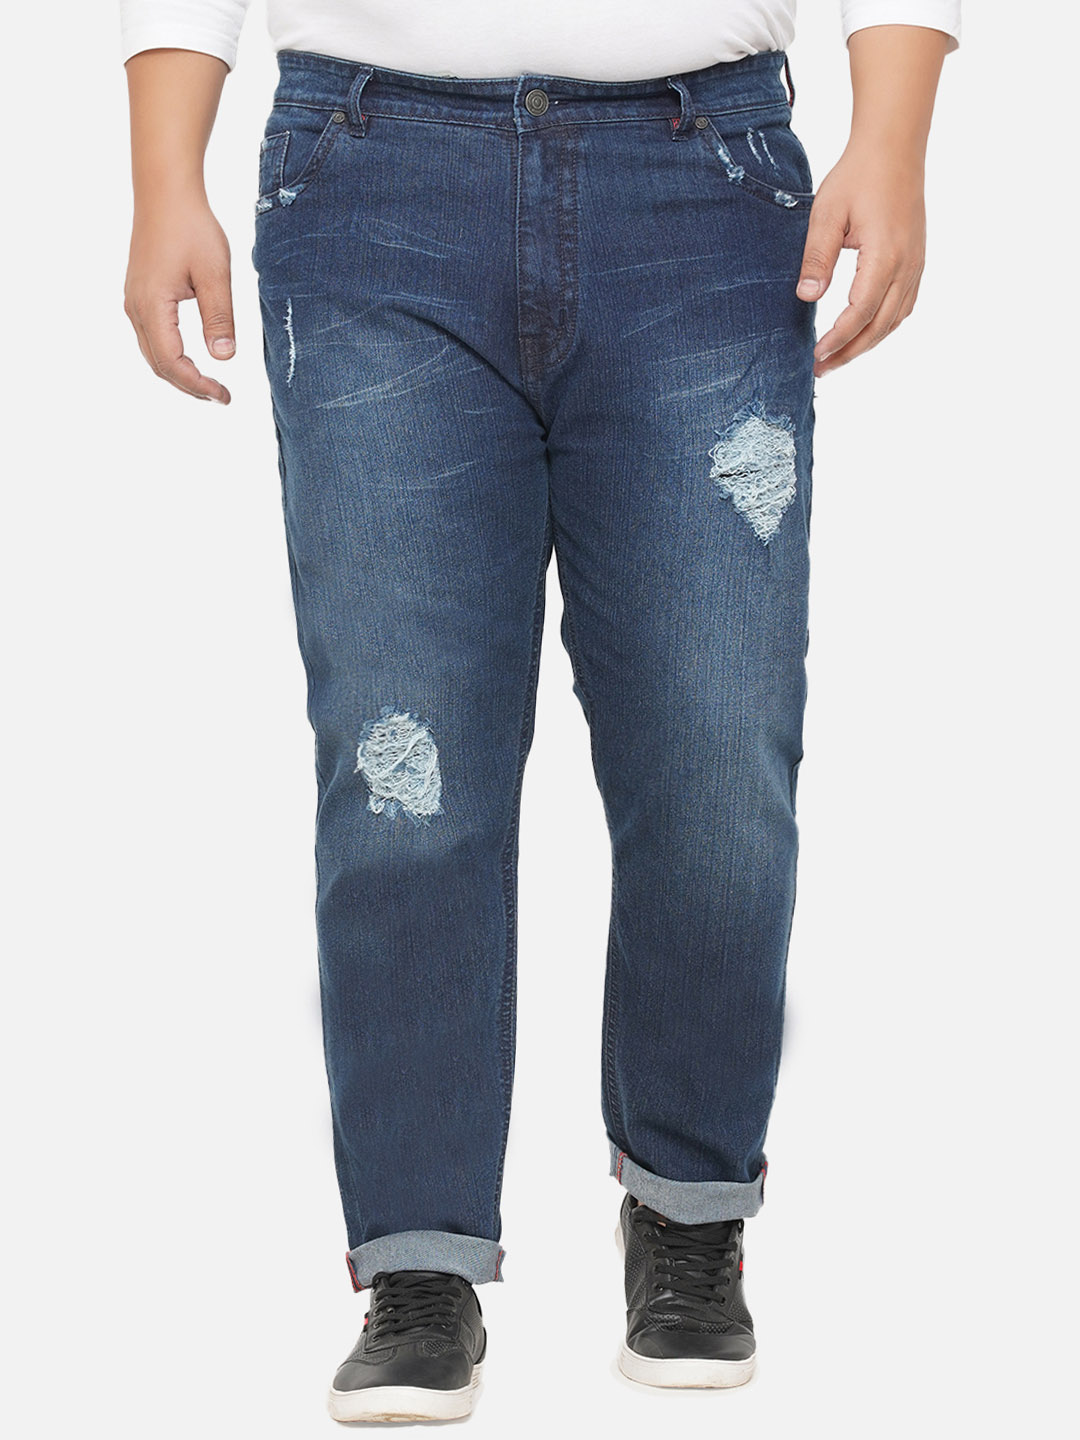 bottomwear/jeans/EJPJ25072/ejpj25072-4.jpg